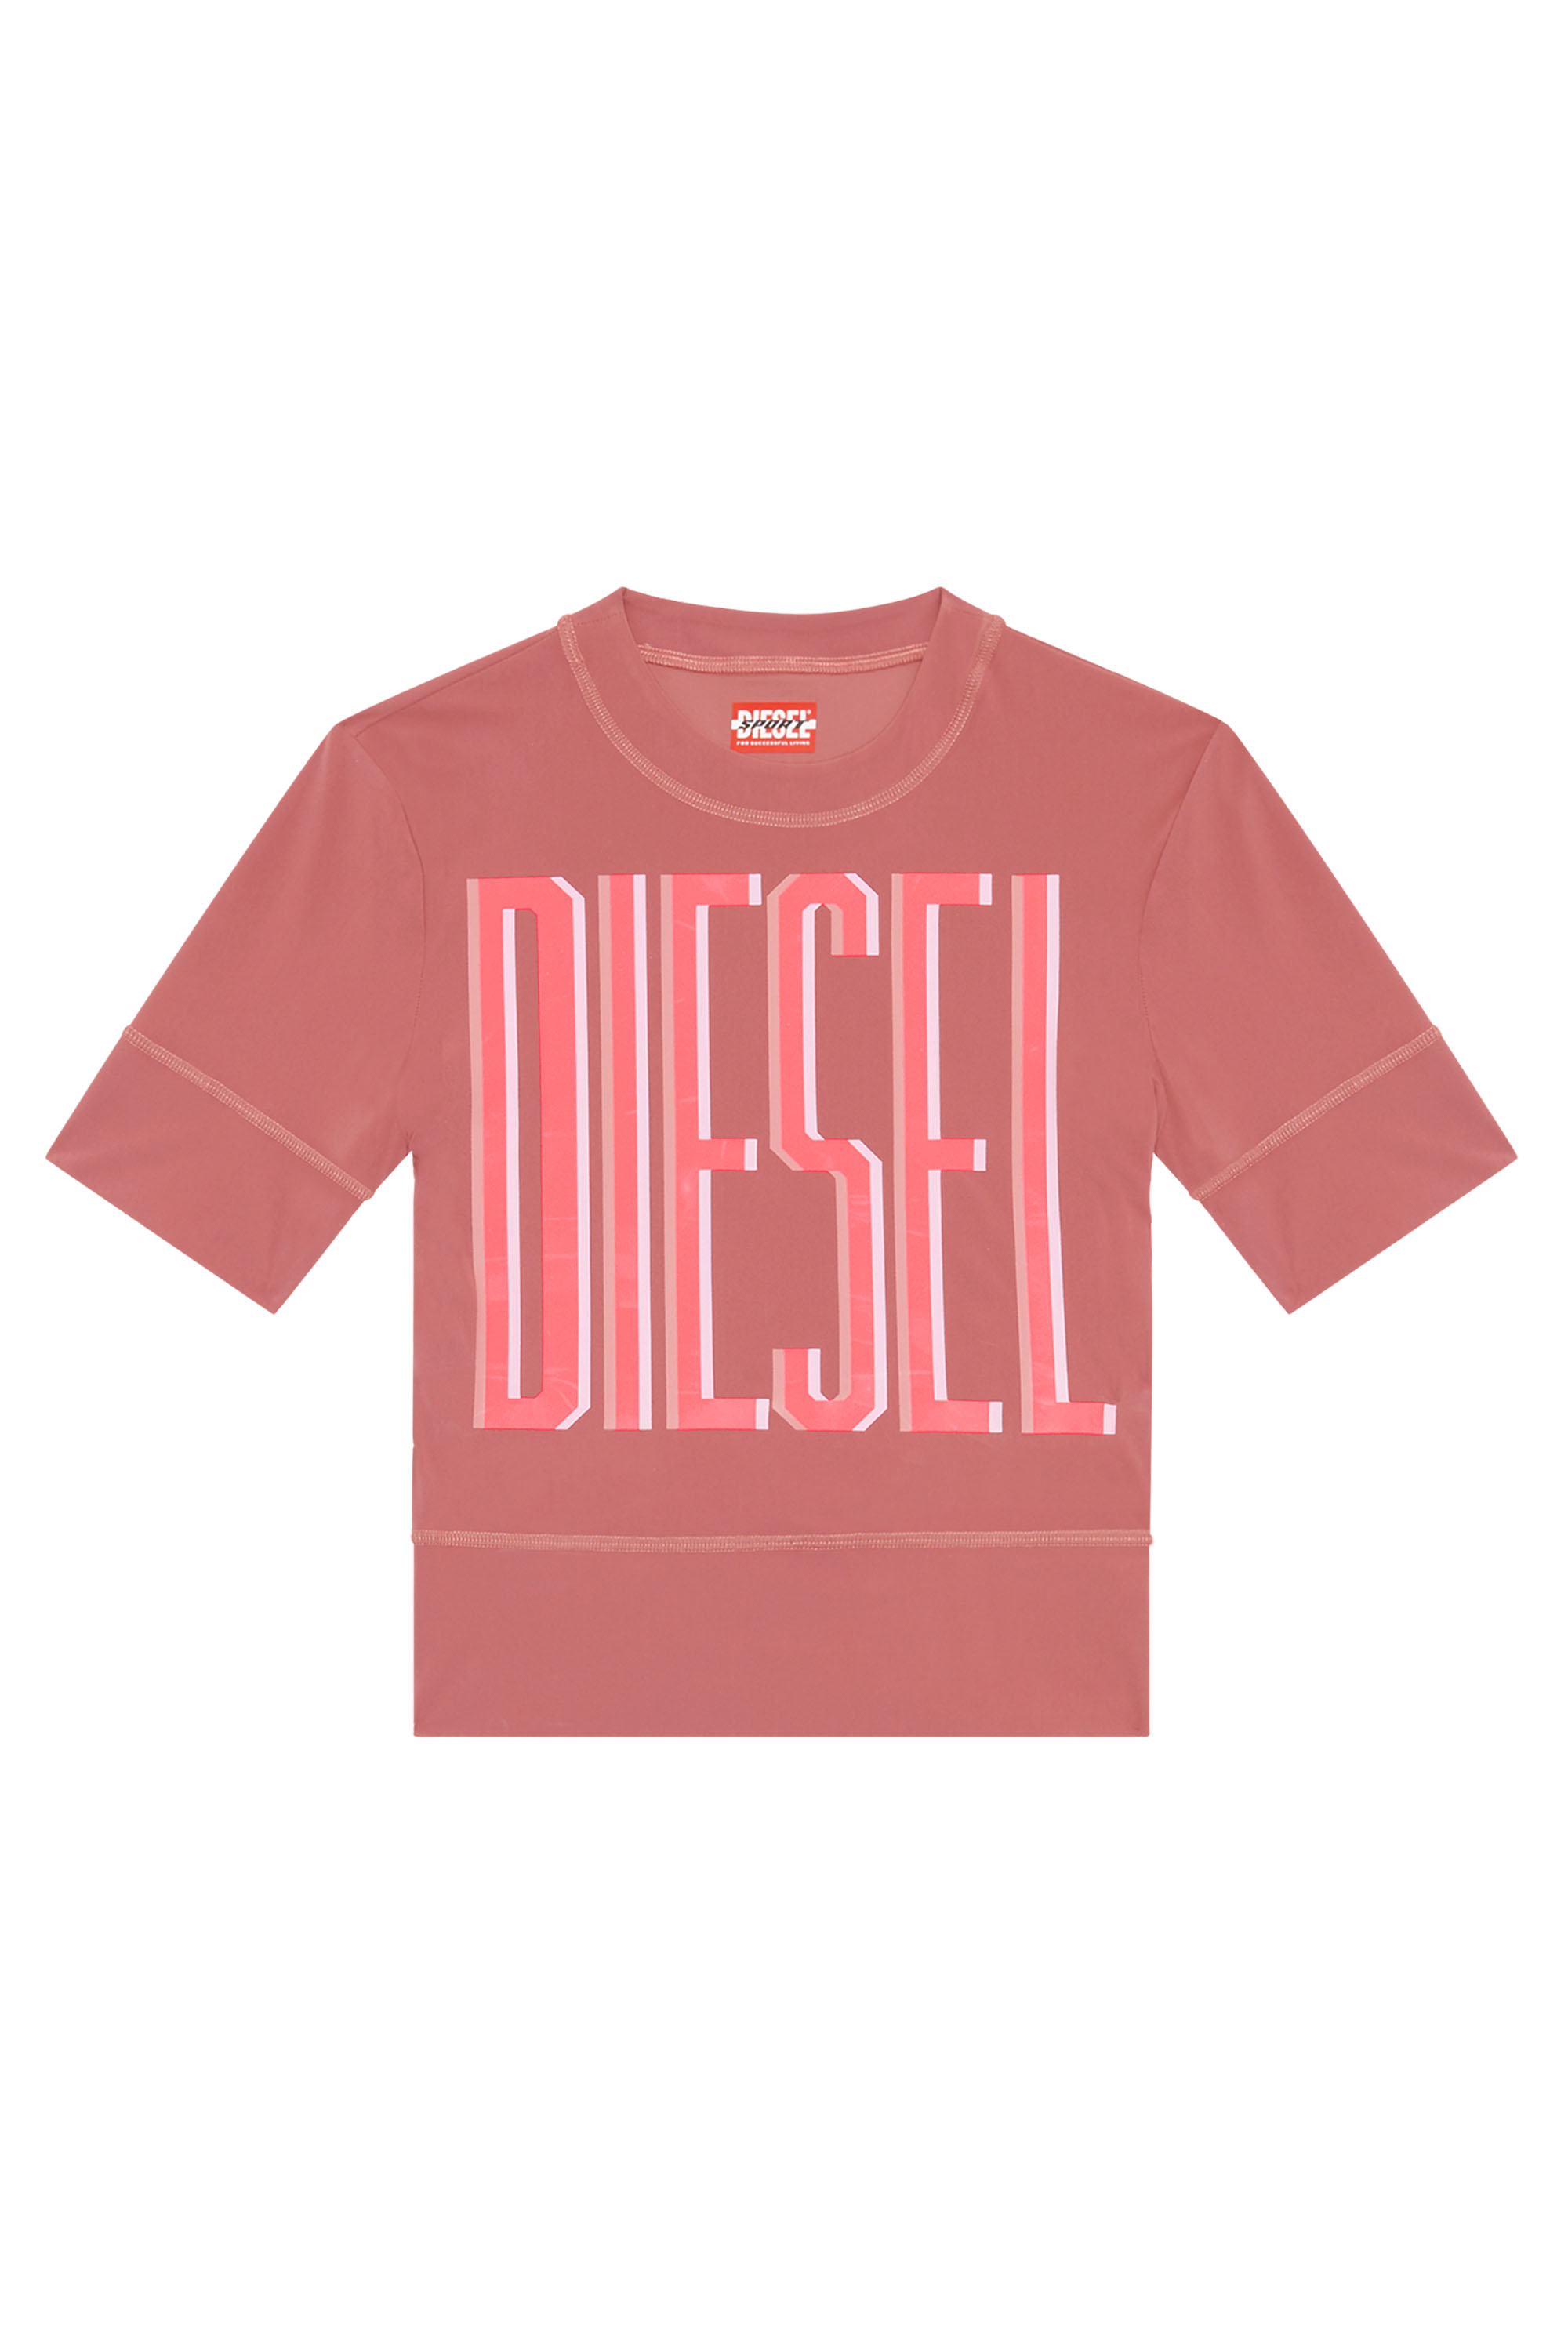 Diesel - AWTEE-JULES-WT06, Brown - Image 1